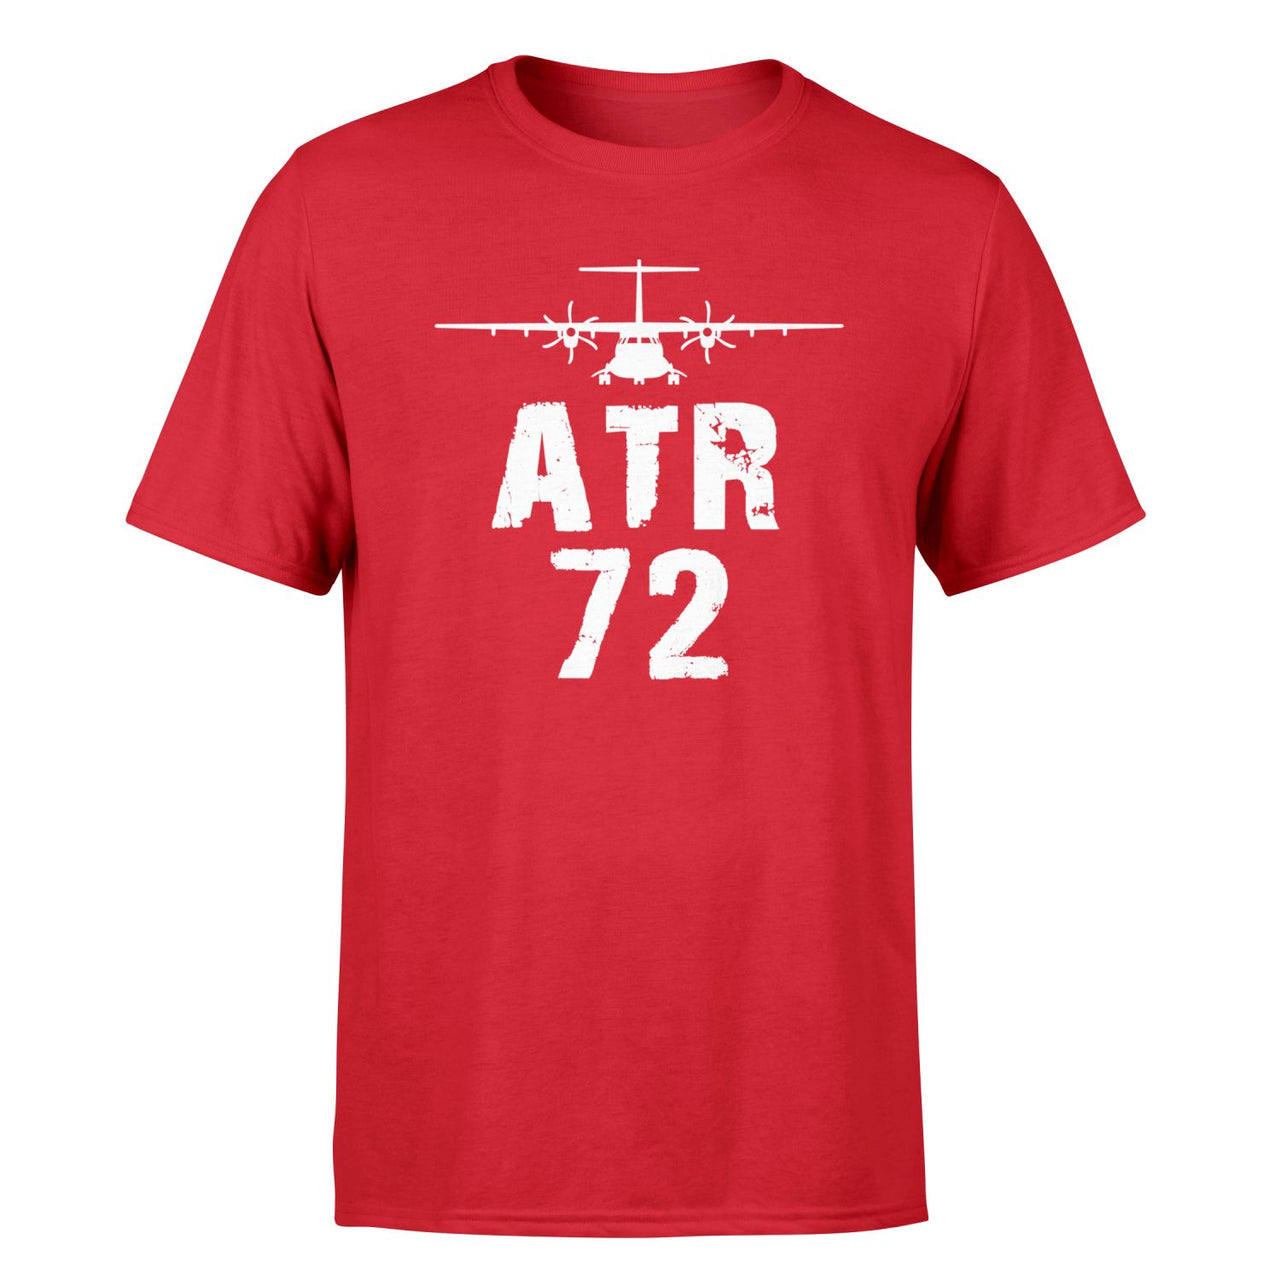 ATR-72 & Plane Designed T-Shirts